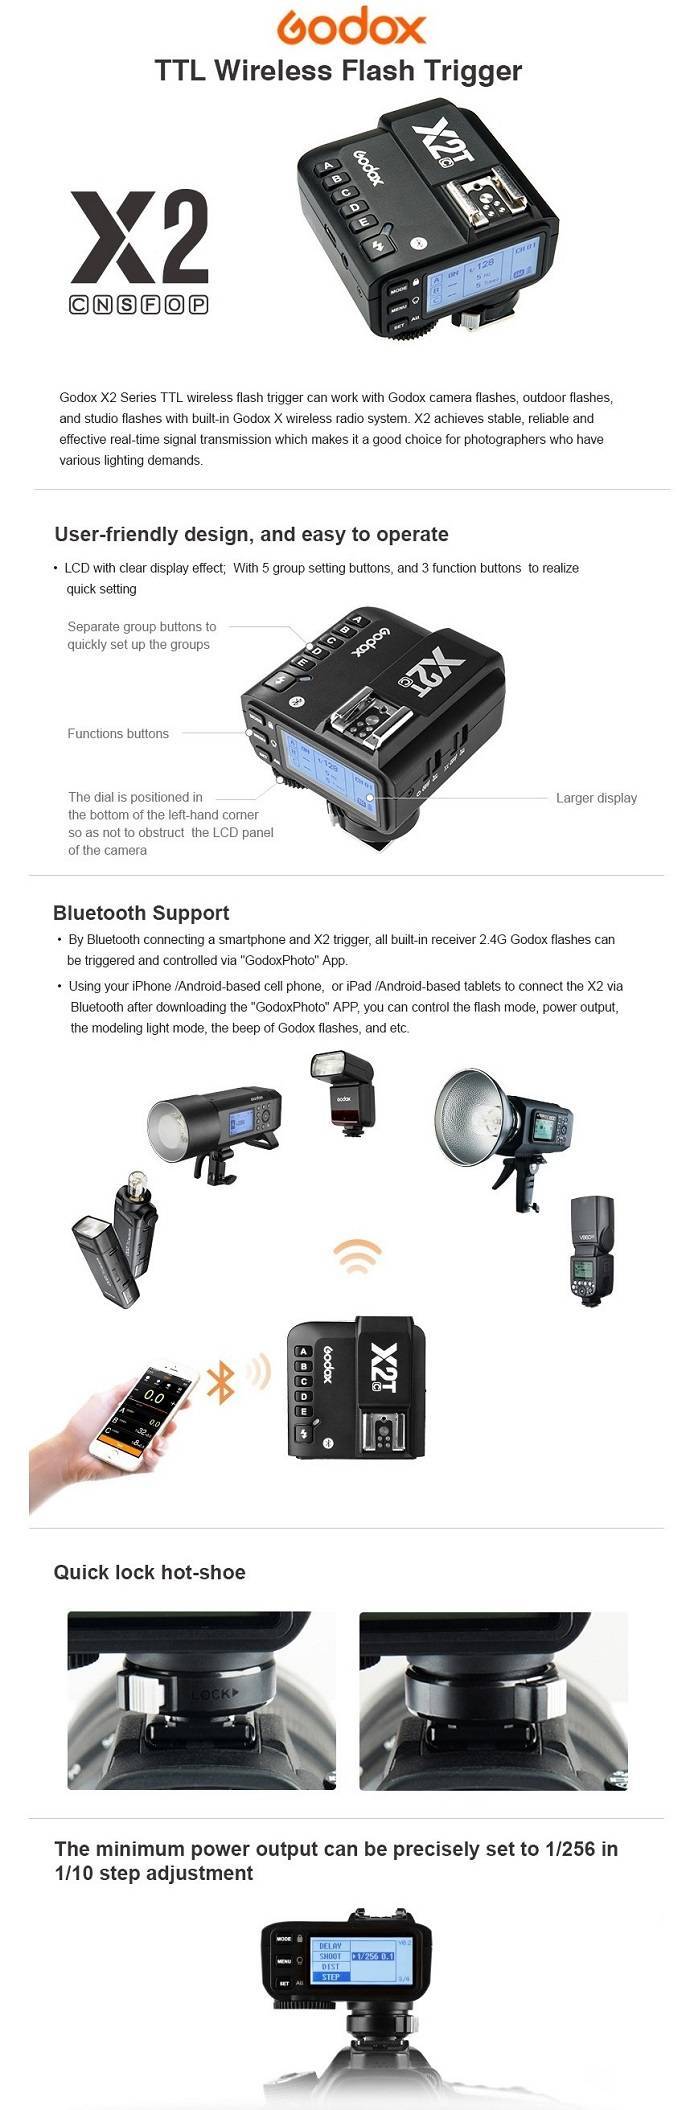 Trigger Godox X2T-C cho Canon tích hợp TTL, HSS 1/8000s. Hàng chính hãng